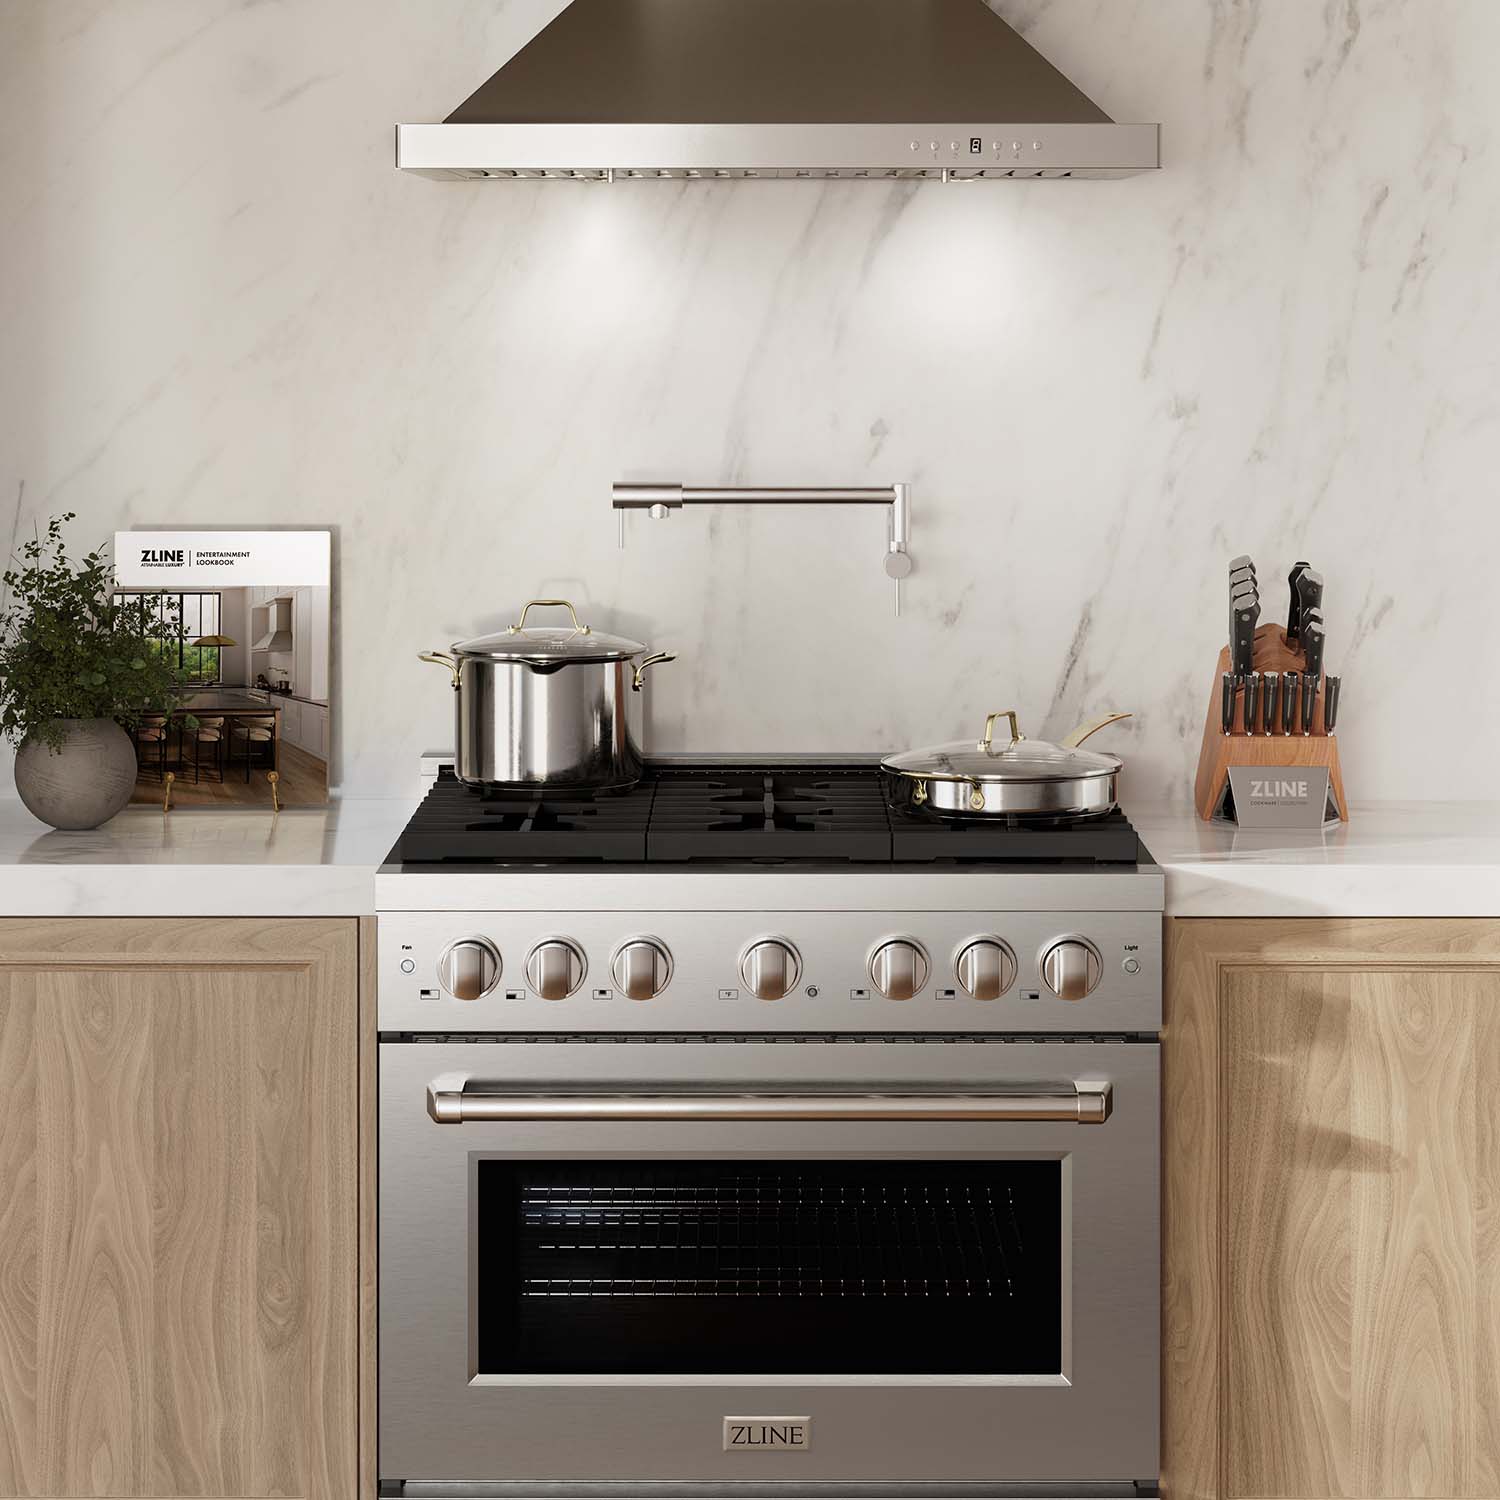 ZLINE 36" Stainless Steel Gas Range in luxury kitchen front.